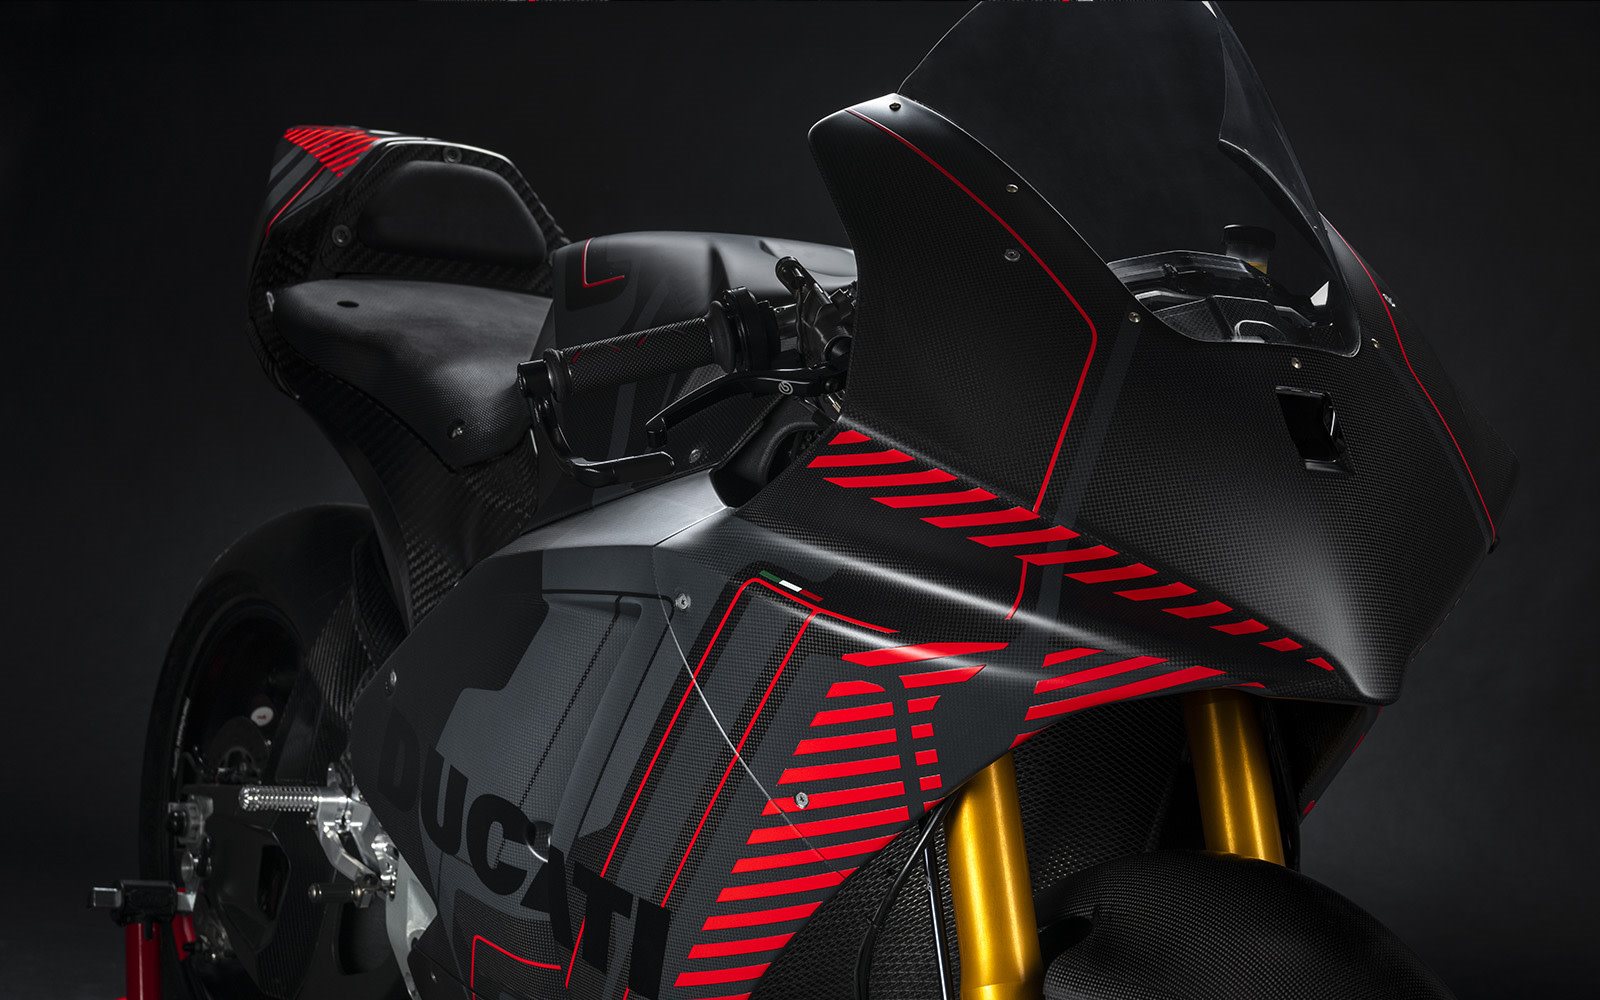 Revelados los detalles del prototipo Ducati MotoE: experiencia para el futuro desarrollada a través de las competencias
